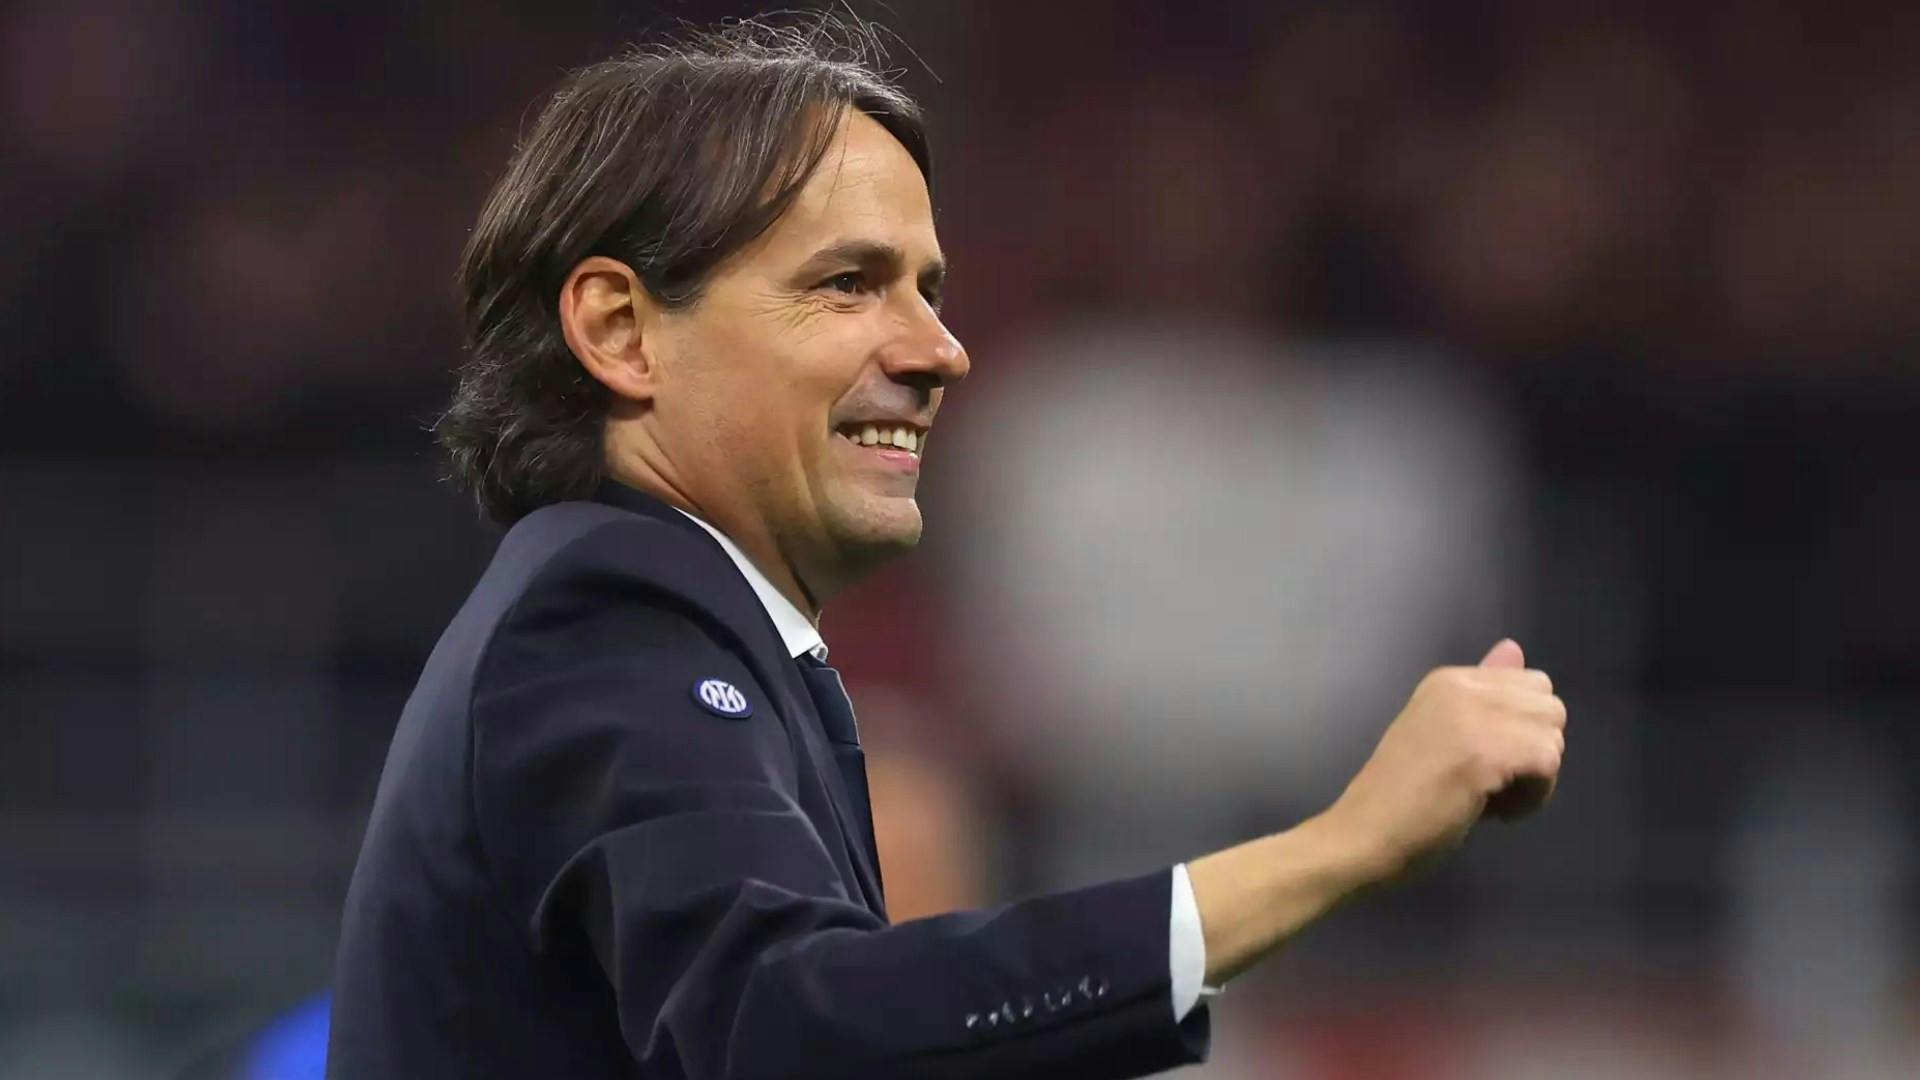 Sorteggi Champions, Inzaghi: "Vogliamo essere protagonisti"